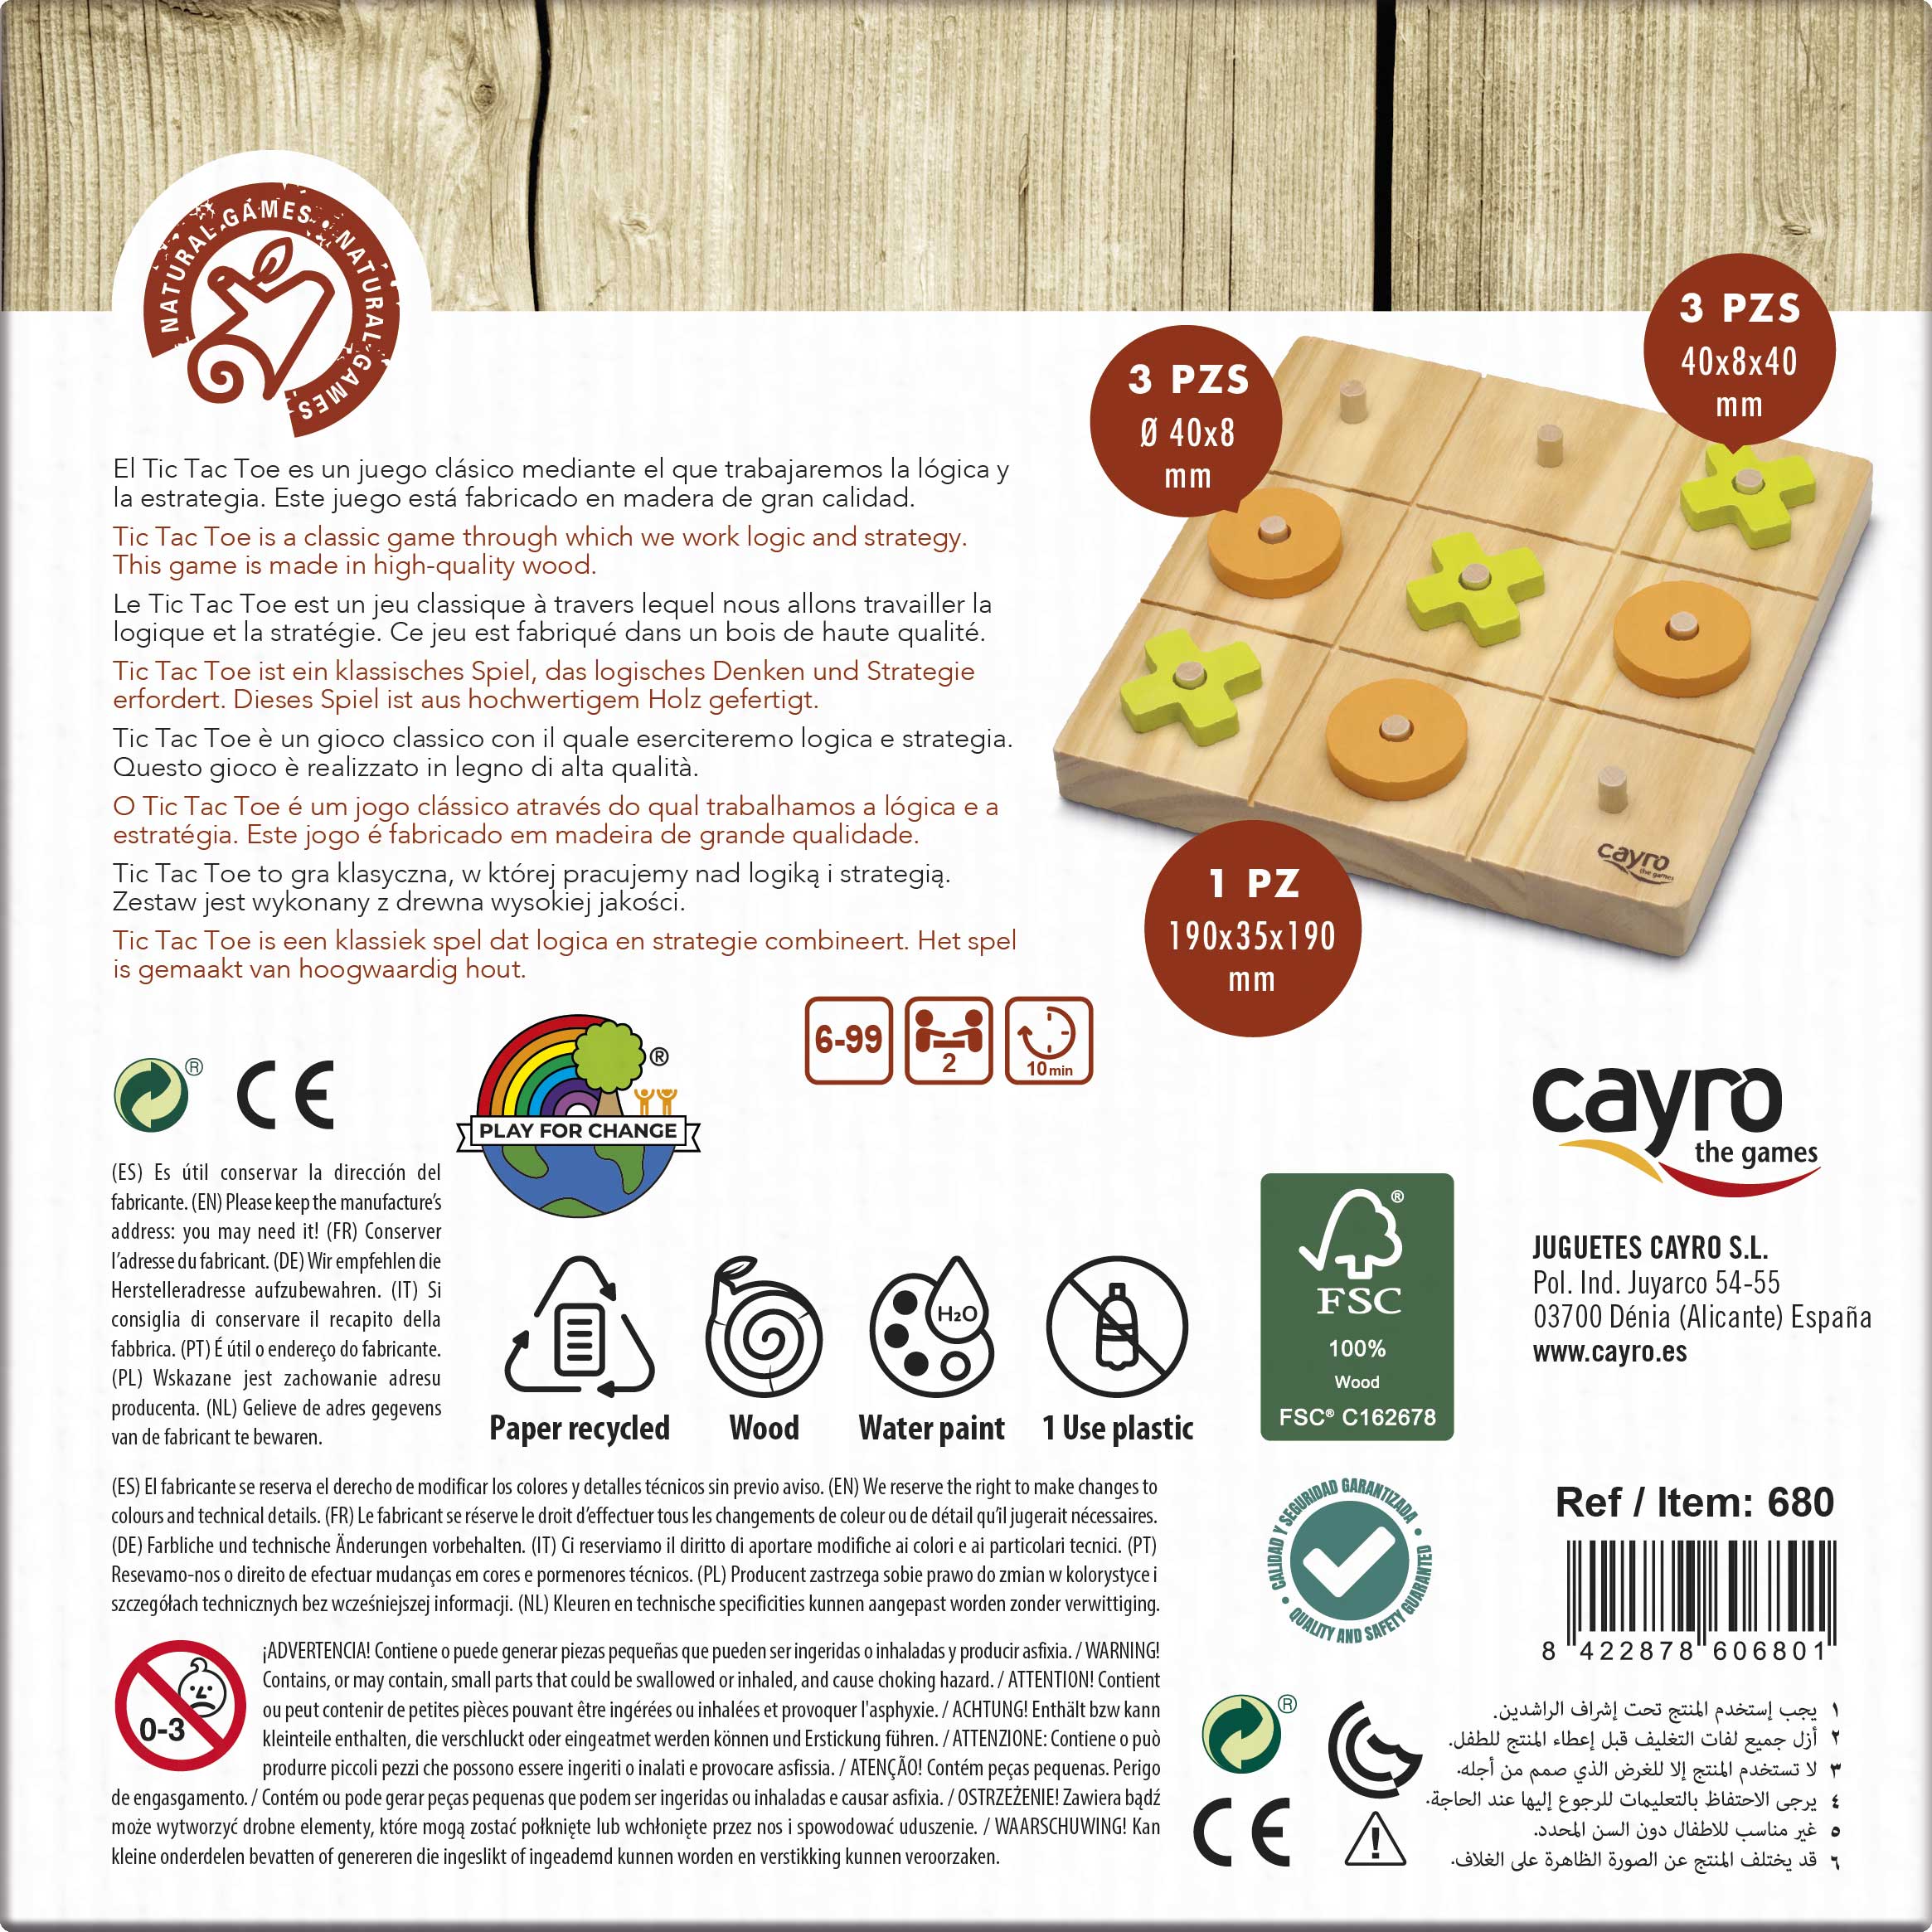 Tic Tac Toe - 3 en raya de madera de Cayro - envío 24/48 h -   tienda de juegos de madera